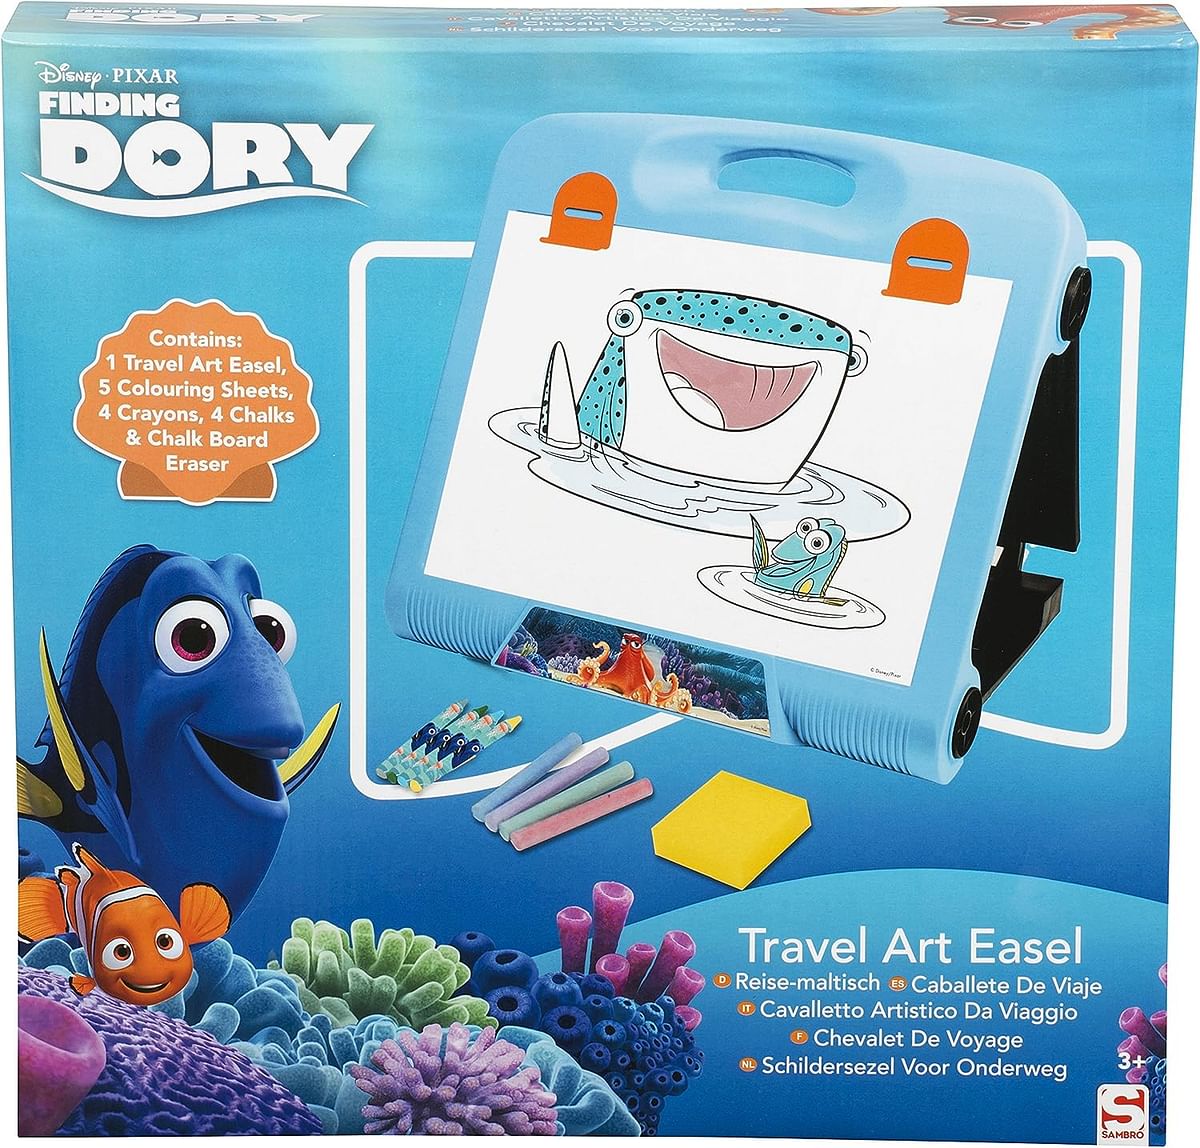 Sambro DDO-4218 Nemo Disney Finding Dory Travel Art Easel, Blue